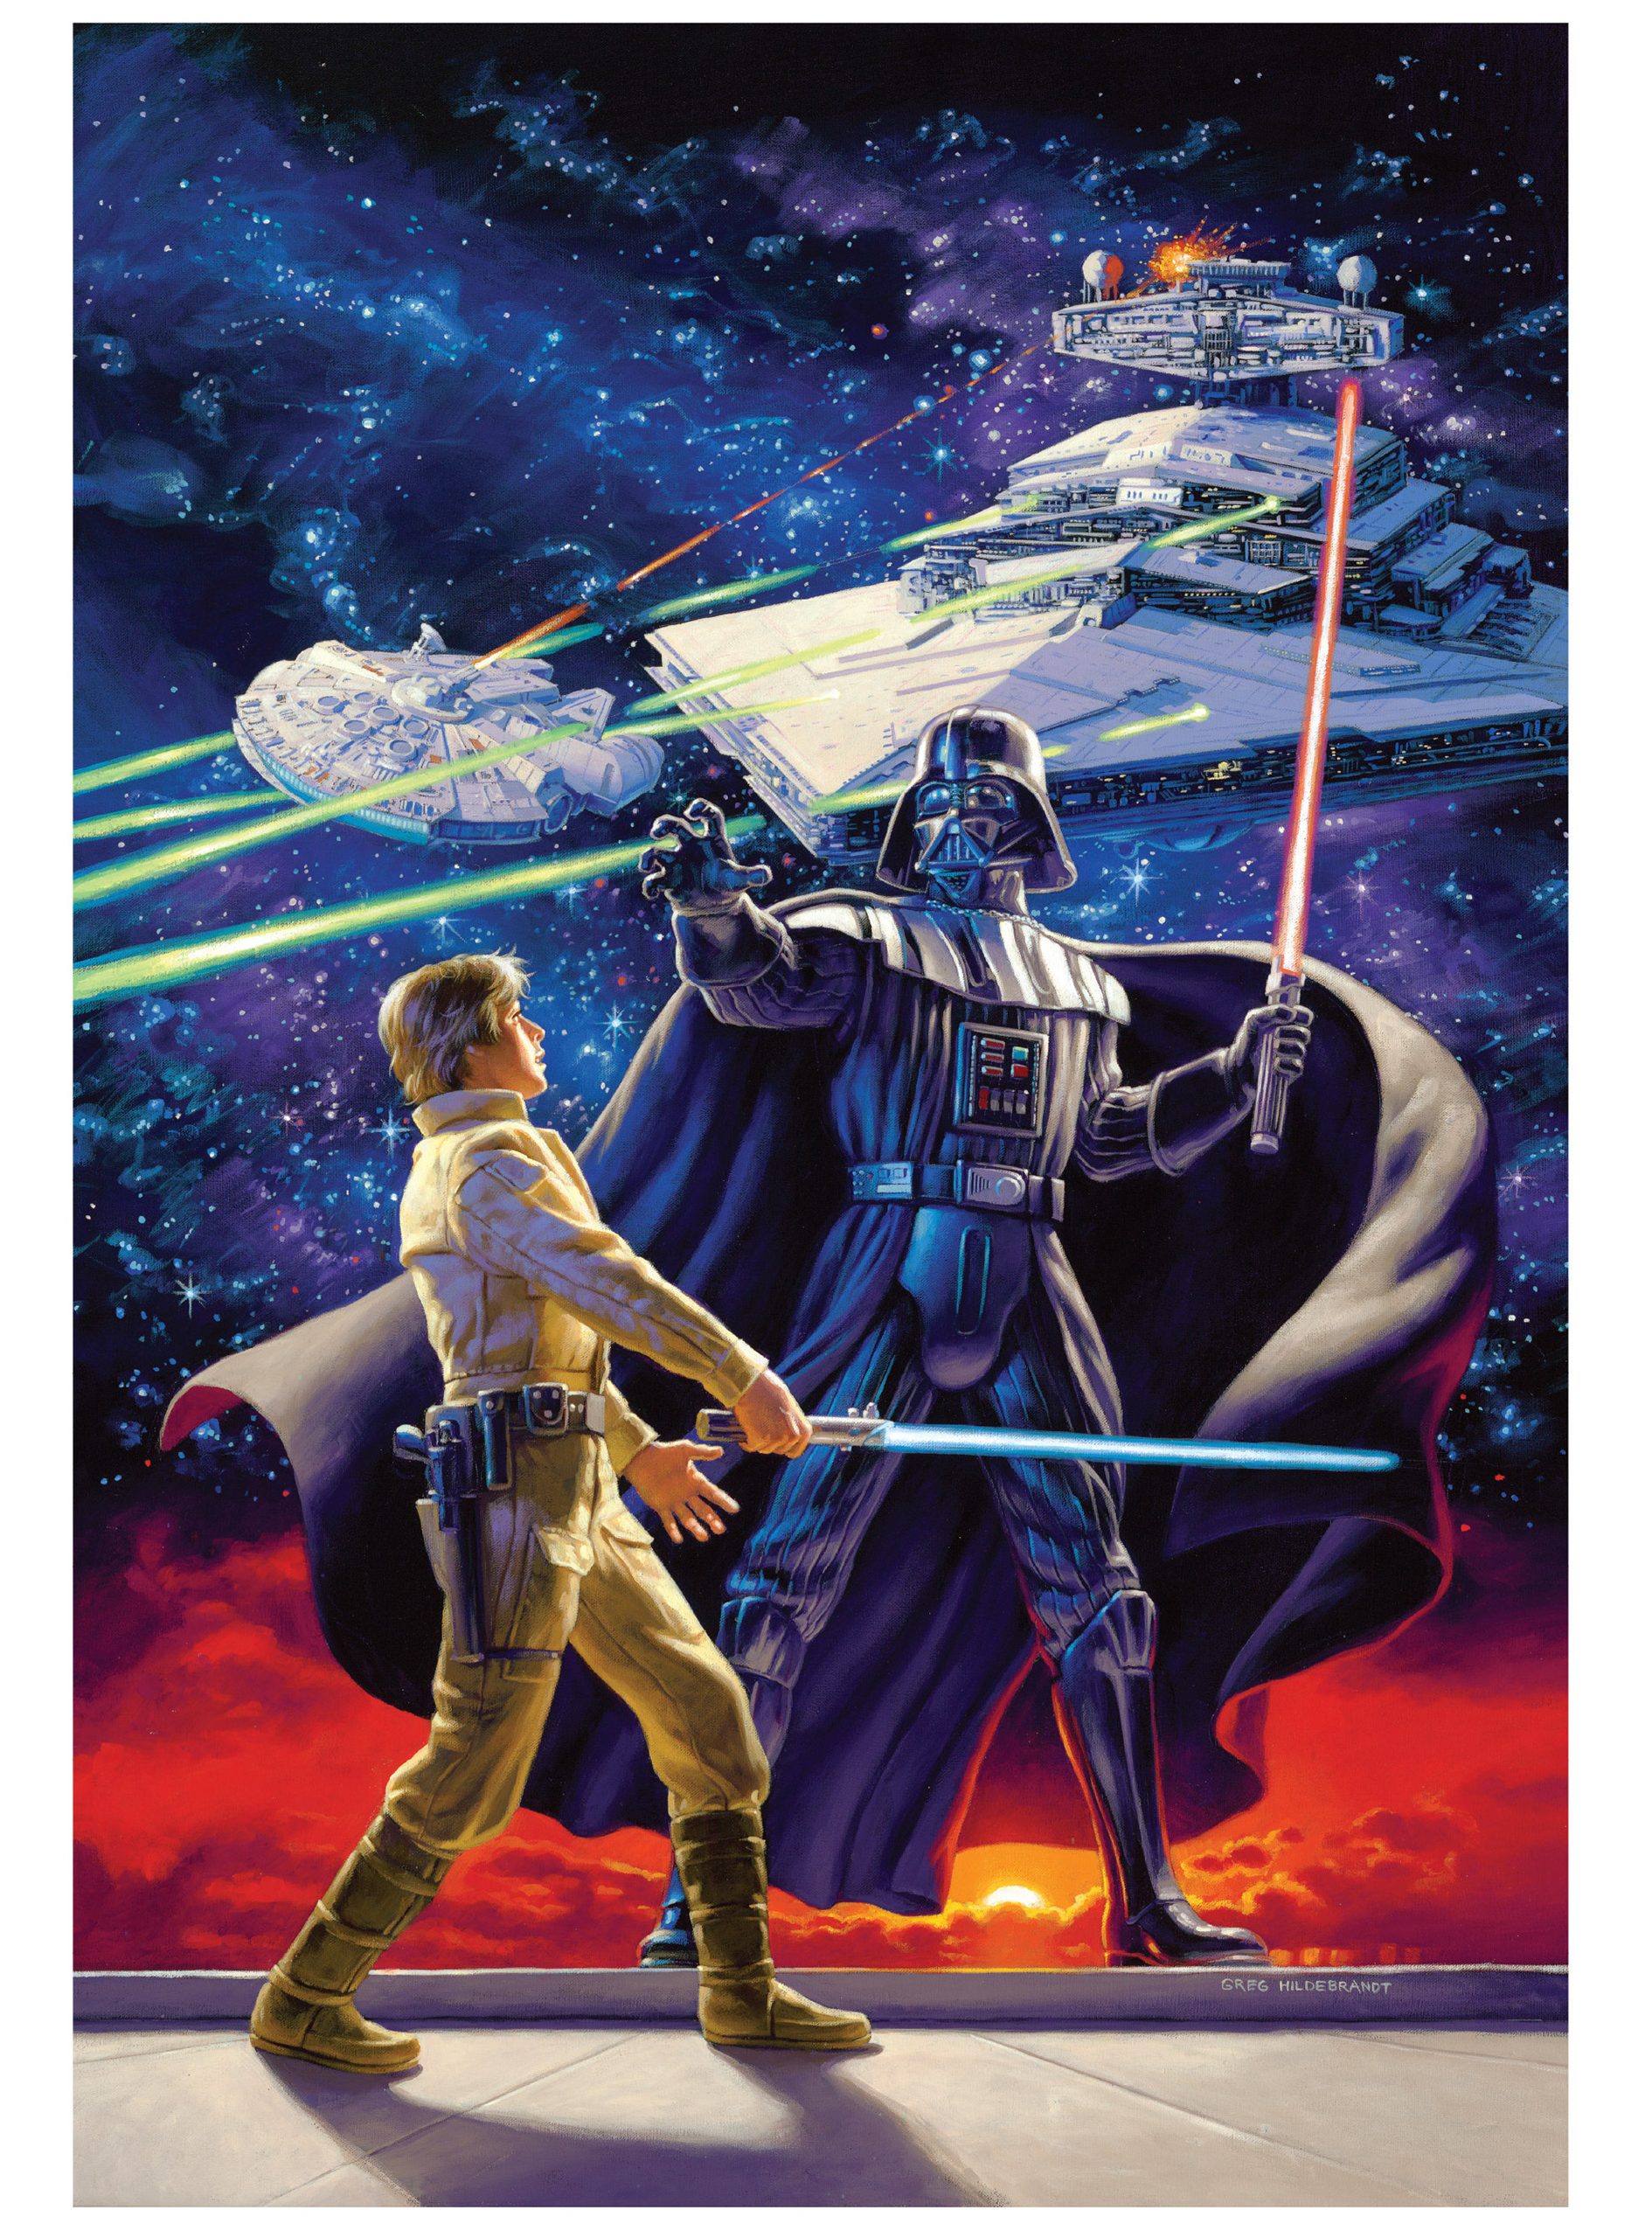 General 1890x2560 Star Wars Darth Vader Luke Skywalker Sith Jedi Millennium Falcon Star Destroyer concept art Greg Hildebrandt poster portrait display